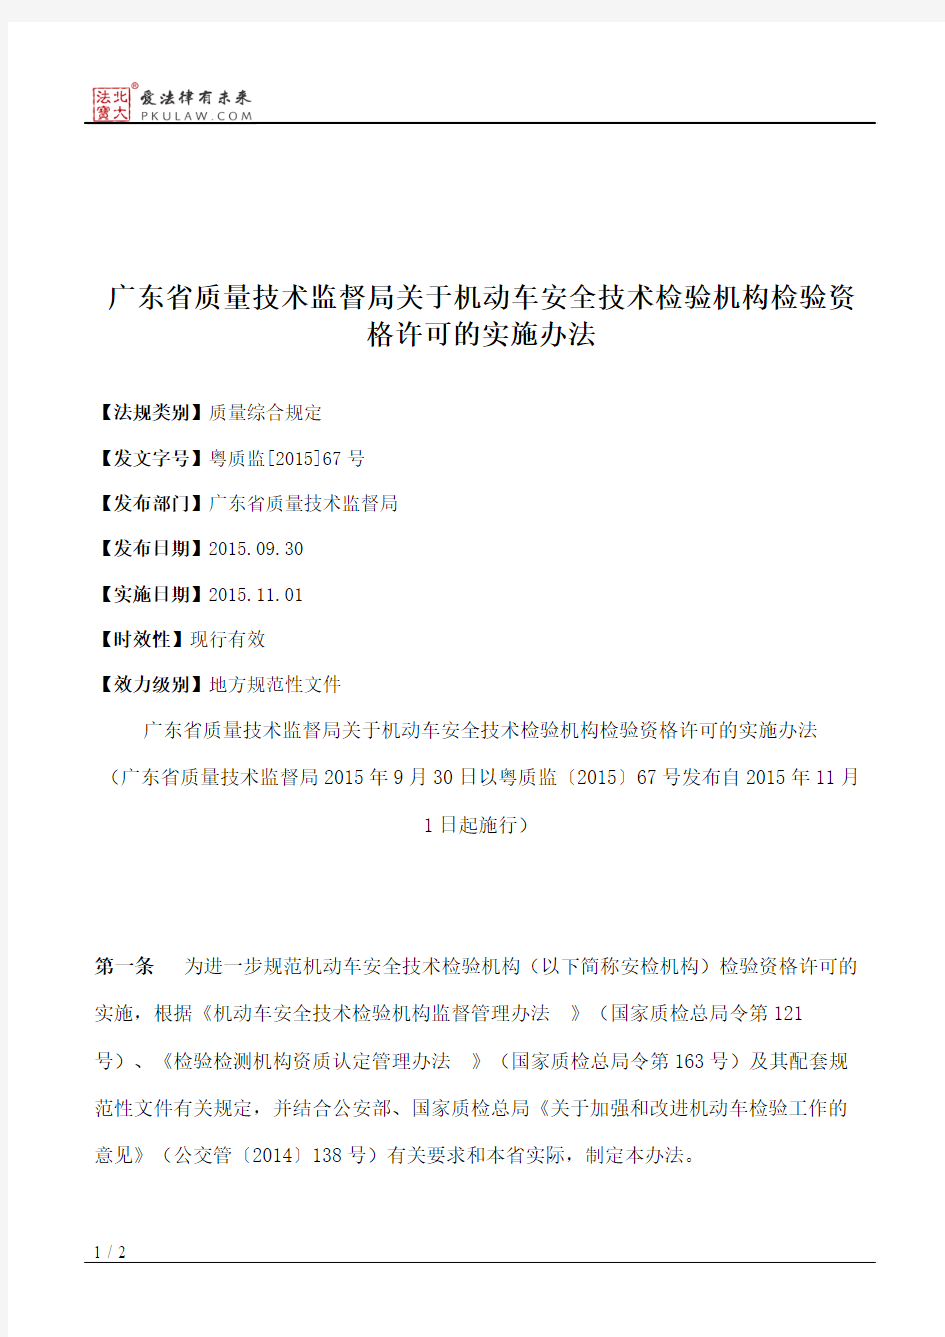 广东省质量技术监督局关于机动车安全技术检验机构检验资格许可的